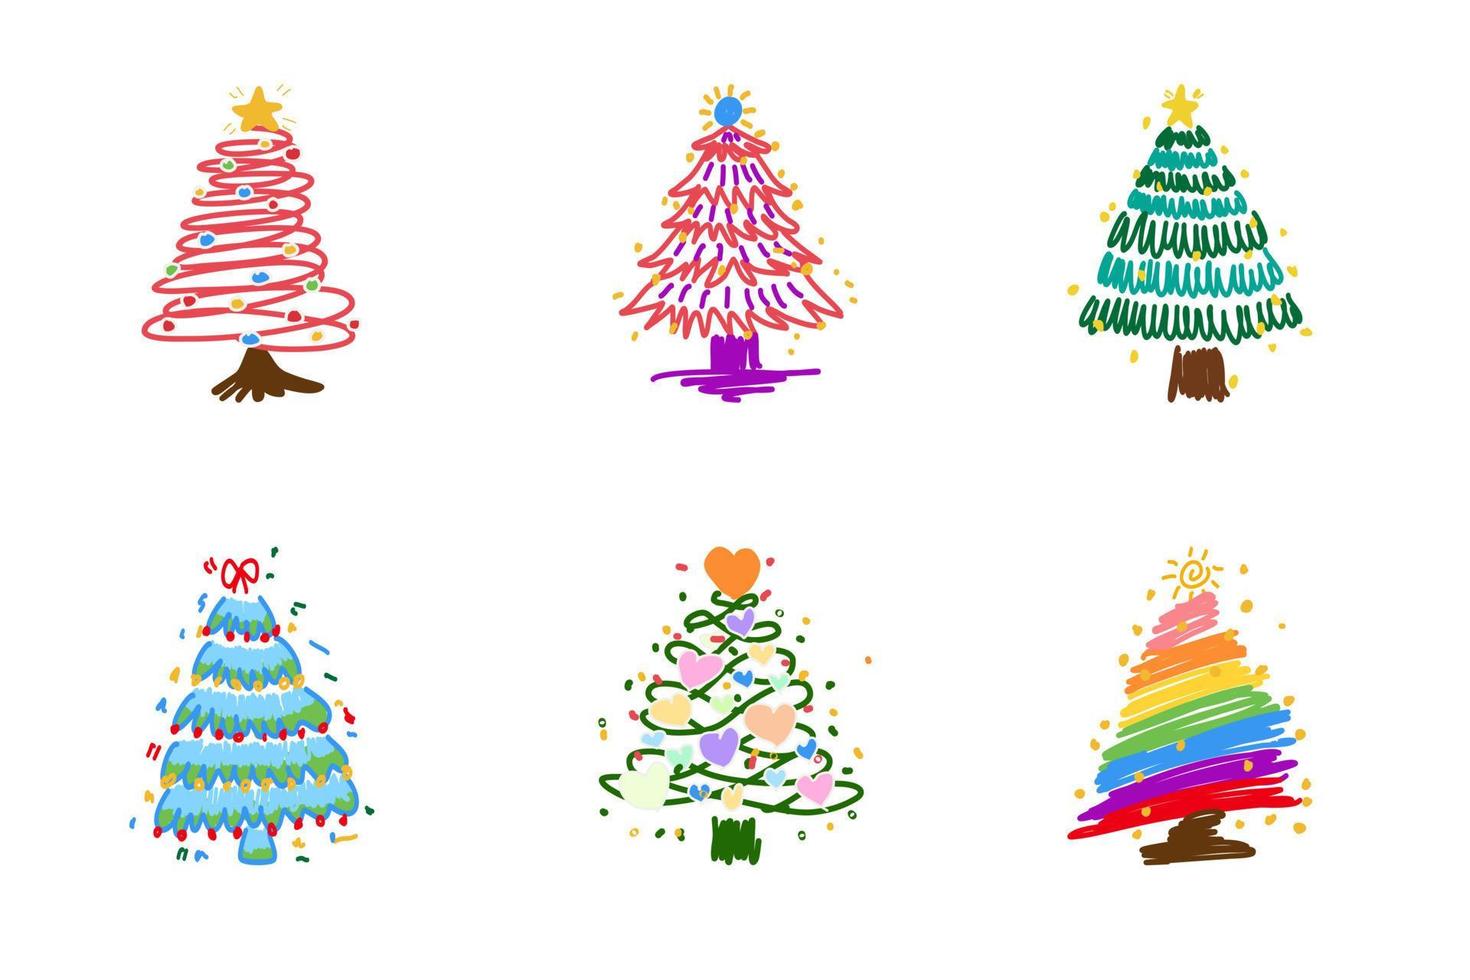 weihnachtsbaum-set, das verschiedene lagom-tannen mit schraffiertem kritzelstil färbt. handgezeichnete weihnachtsbäume mit spielzeug. tintenelement für karten, briefmarken, banner und ihre kreativität vektor